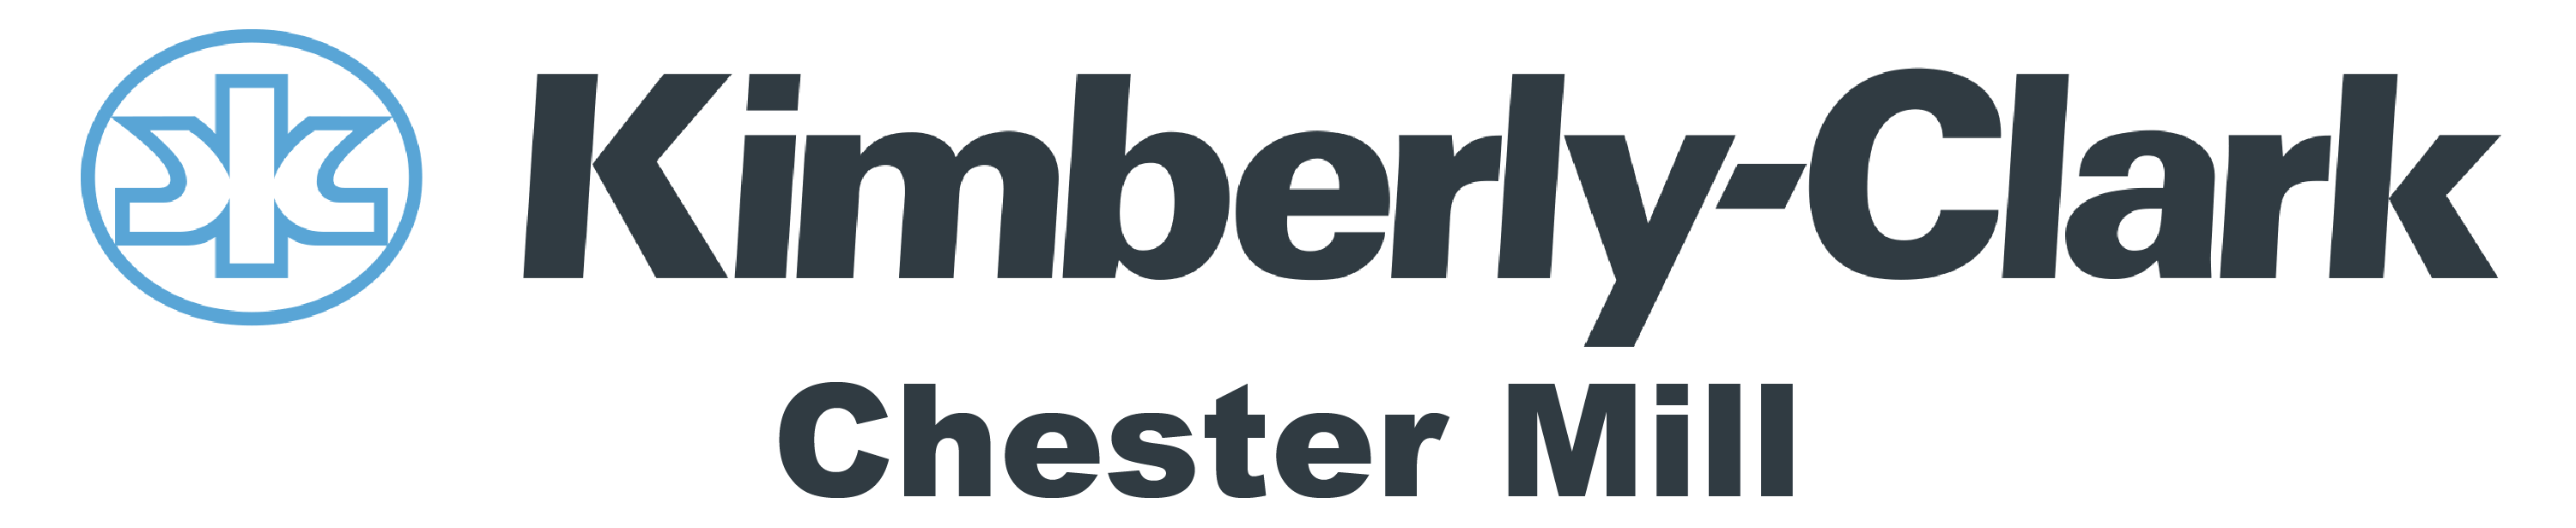 Kimberly Clark Chester Mill Logo